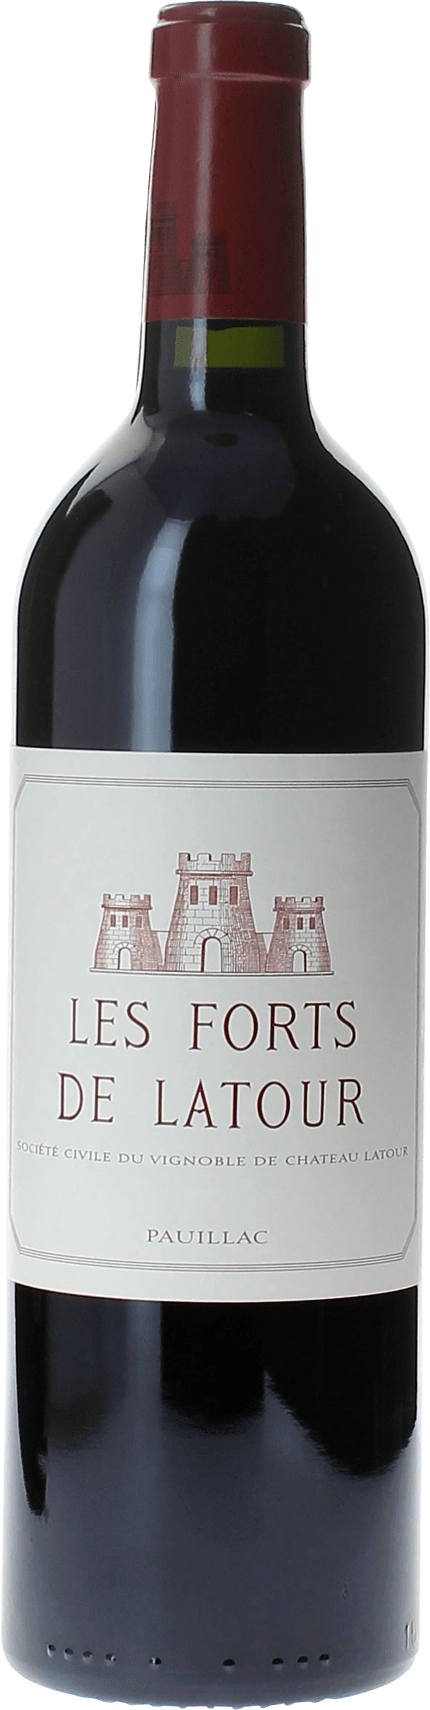 Les forts de latour 2010 2me vin de LATOUR Pauillac, Bordeaux rouge